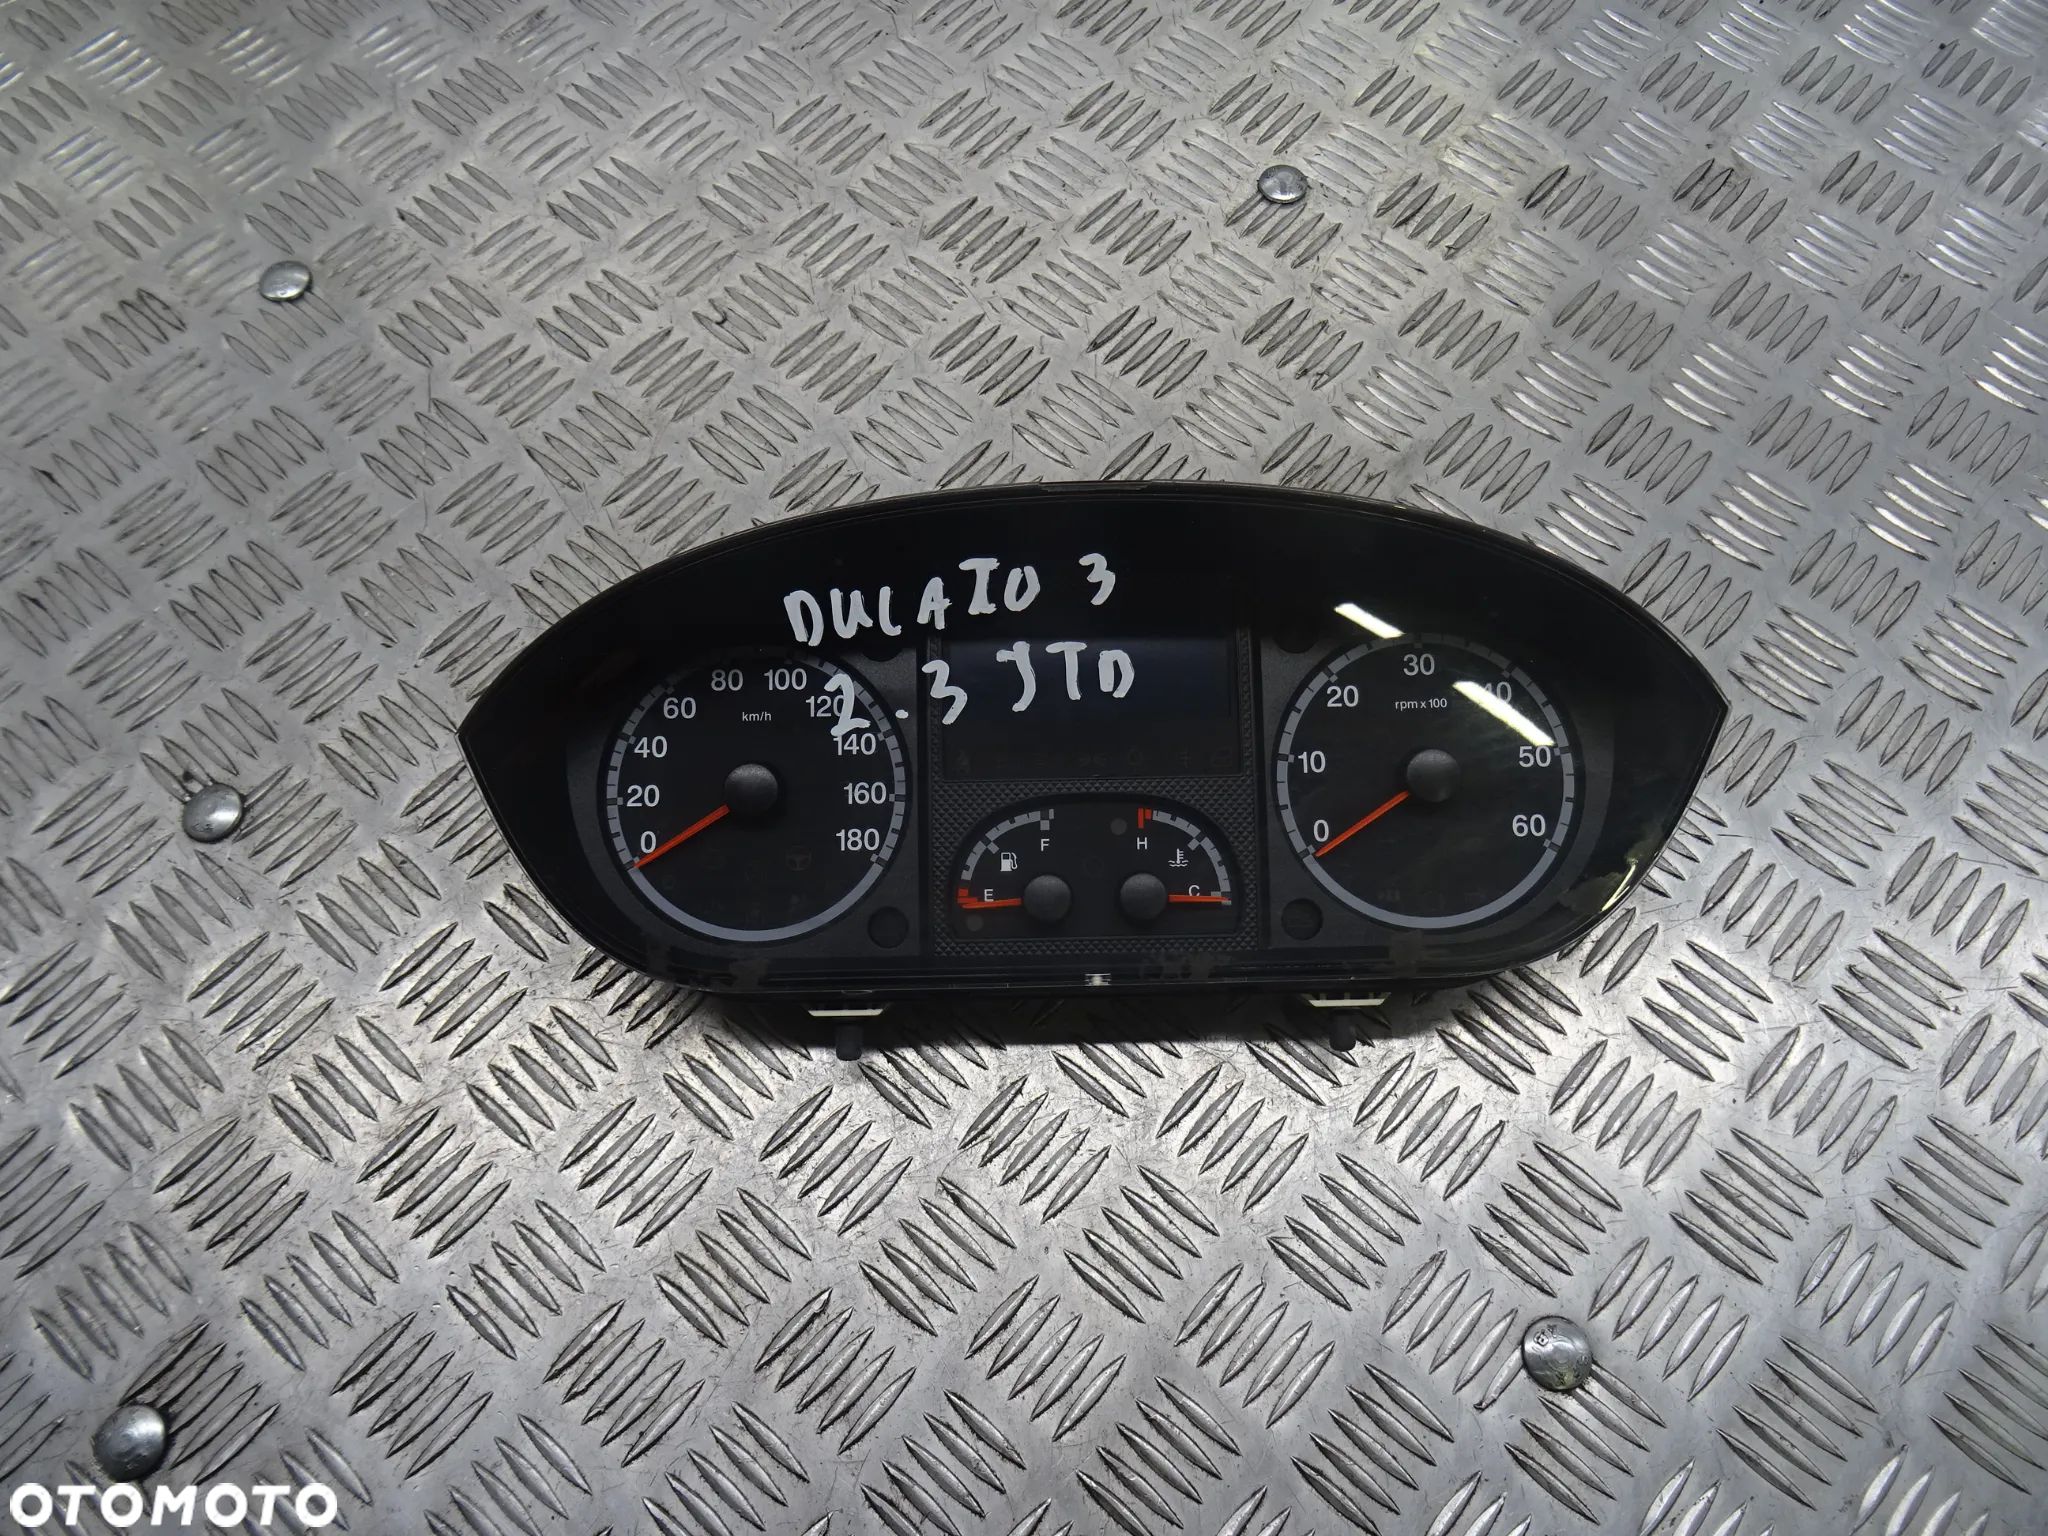 FIAT DUCATO III (06-14) L3H2 2.3JTD LICZNIK ZEGARY - 1